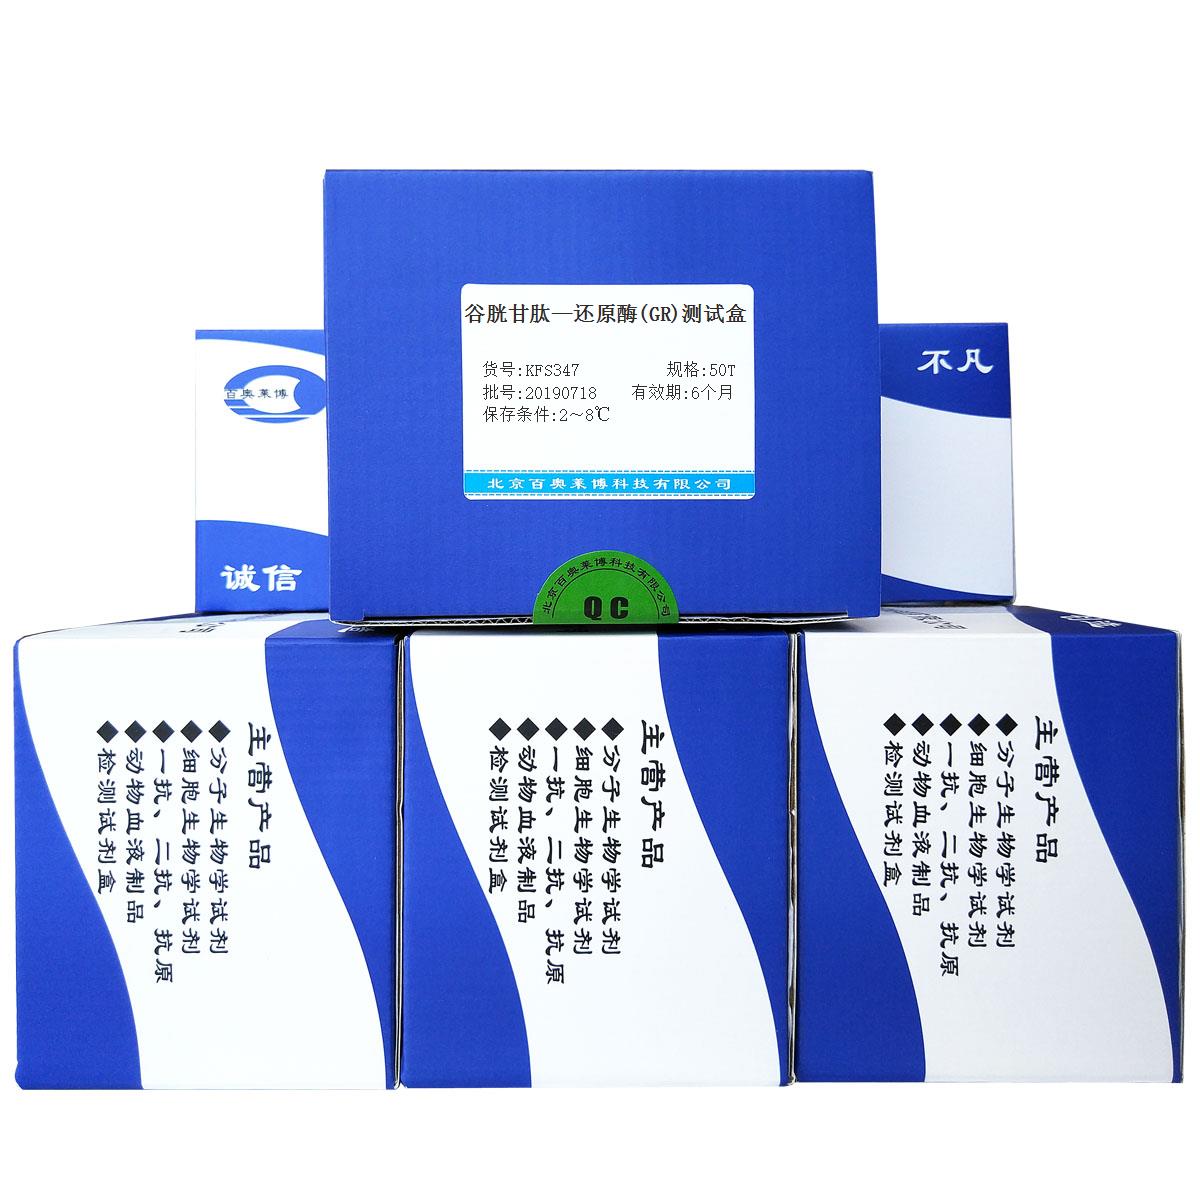 谷胱甘肽—还原酶(GR)测试盒北京供应商